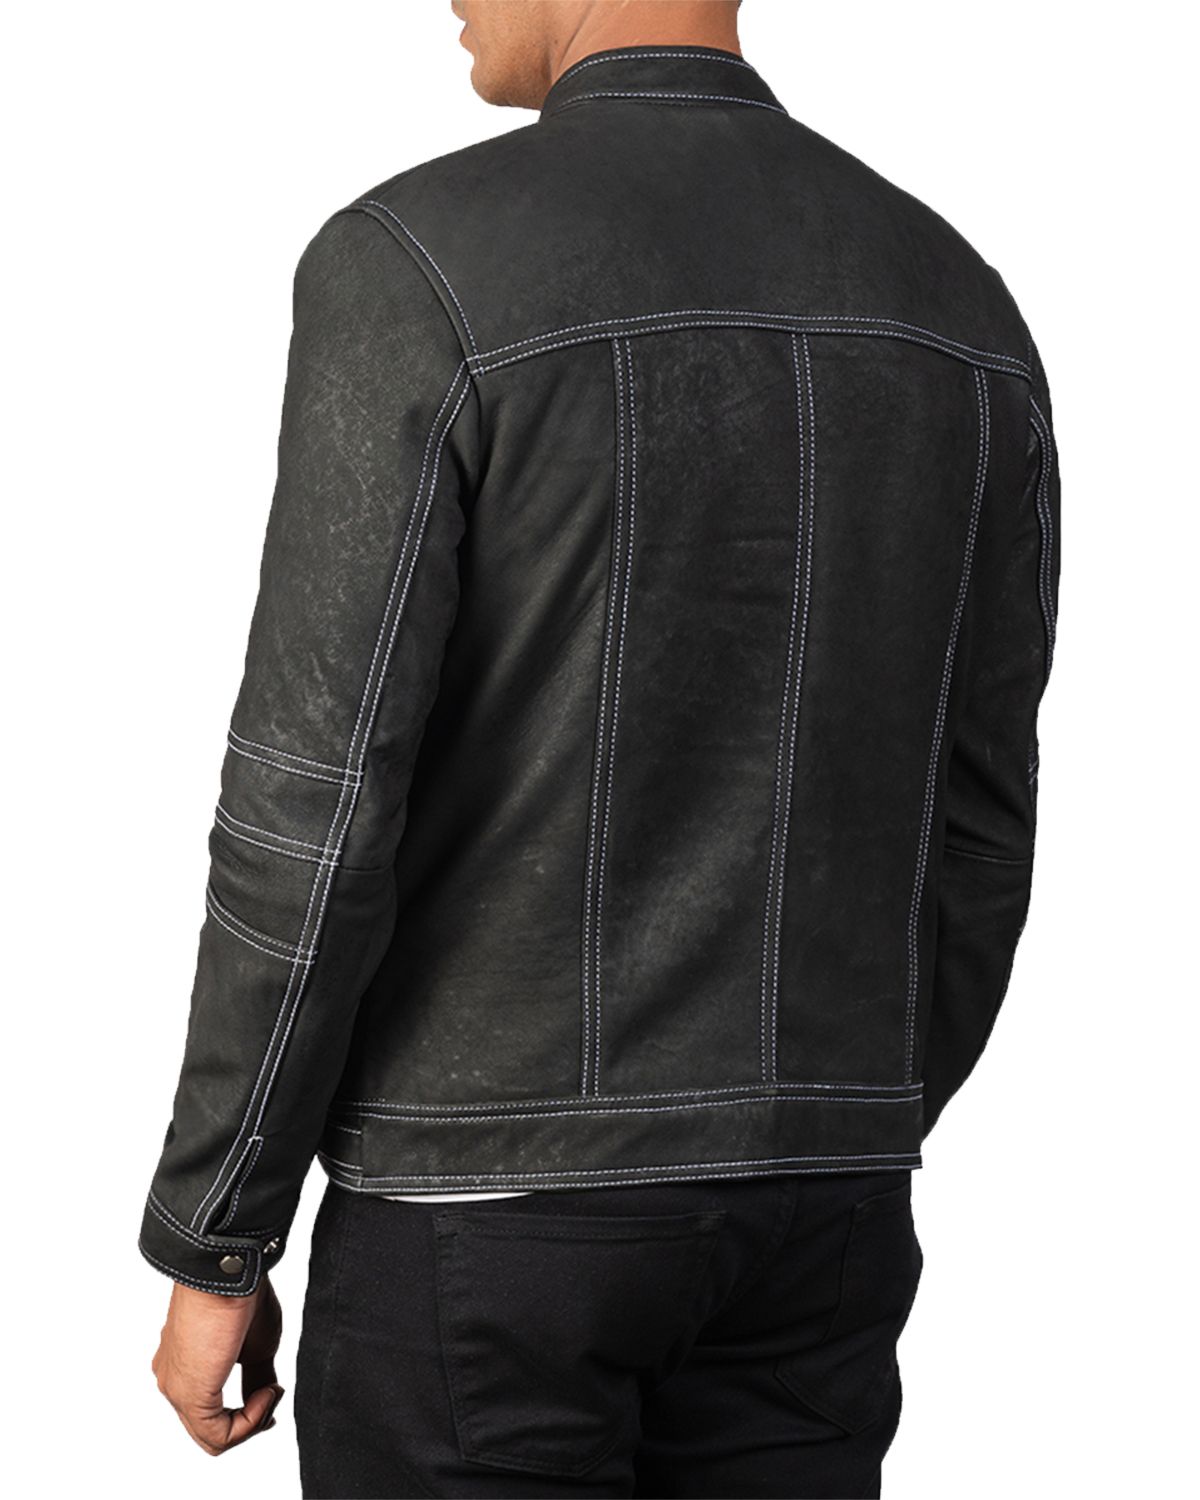 Men's Distressed Black Biker Leather Jacket